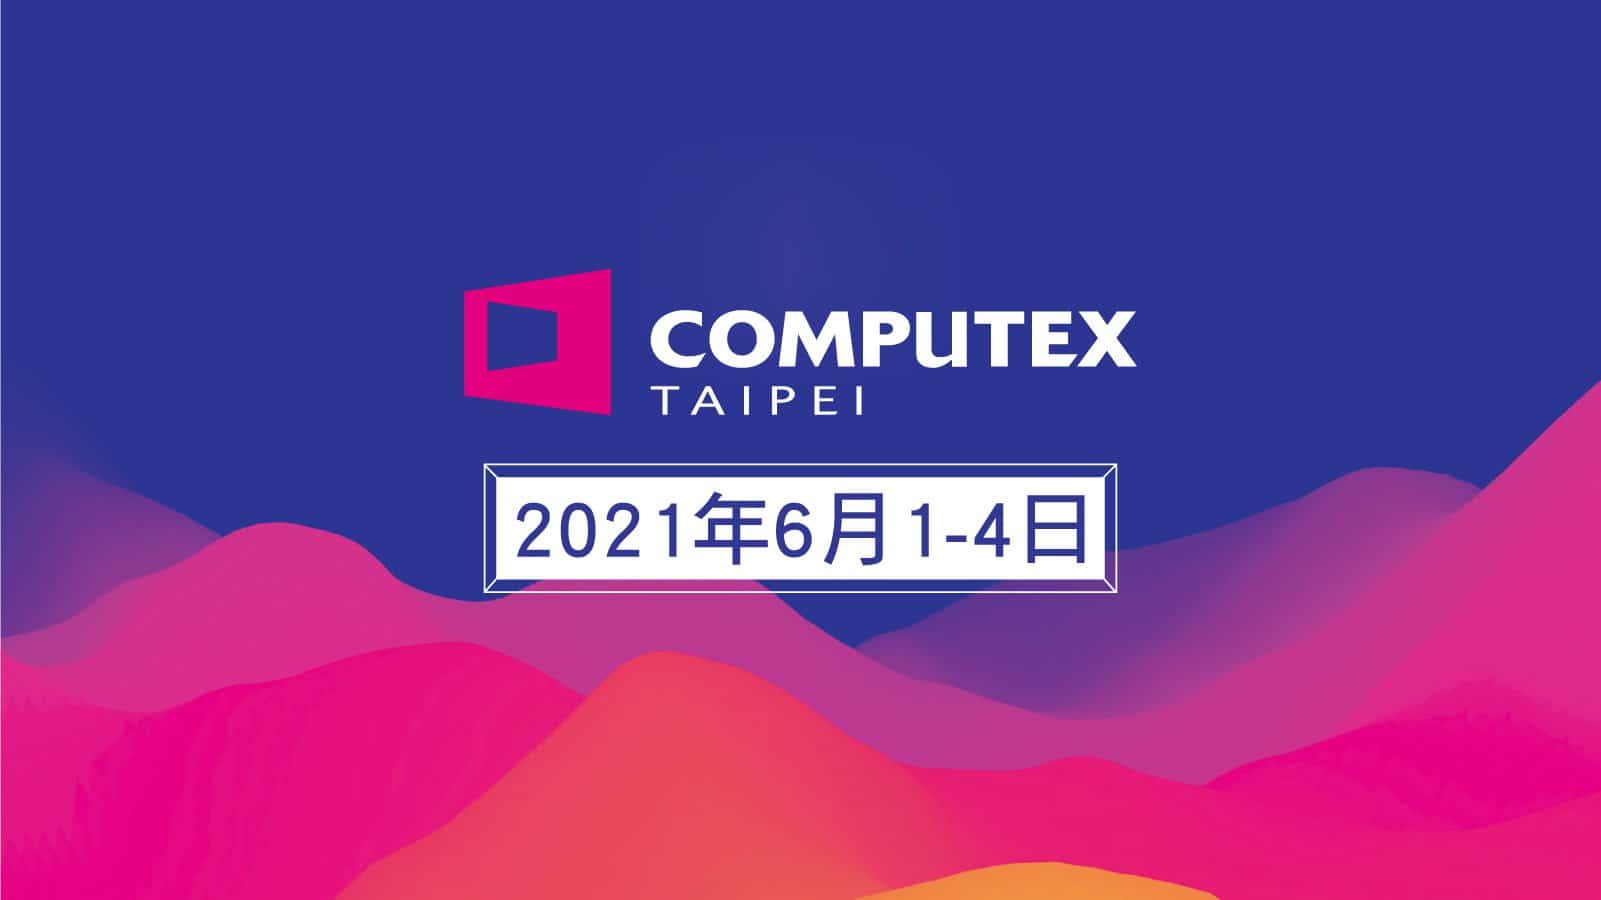 COMPUTEX 2021 chính thức trở lại vào tháng 6 sắp tới, sự kiện được diễn ra dưới sự giúp sức của AI